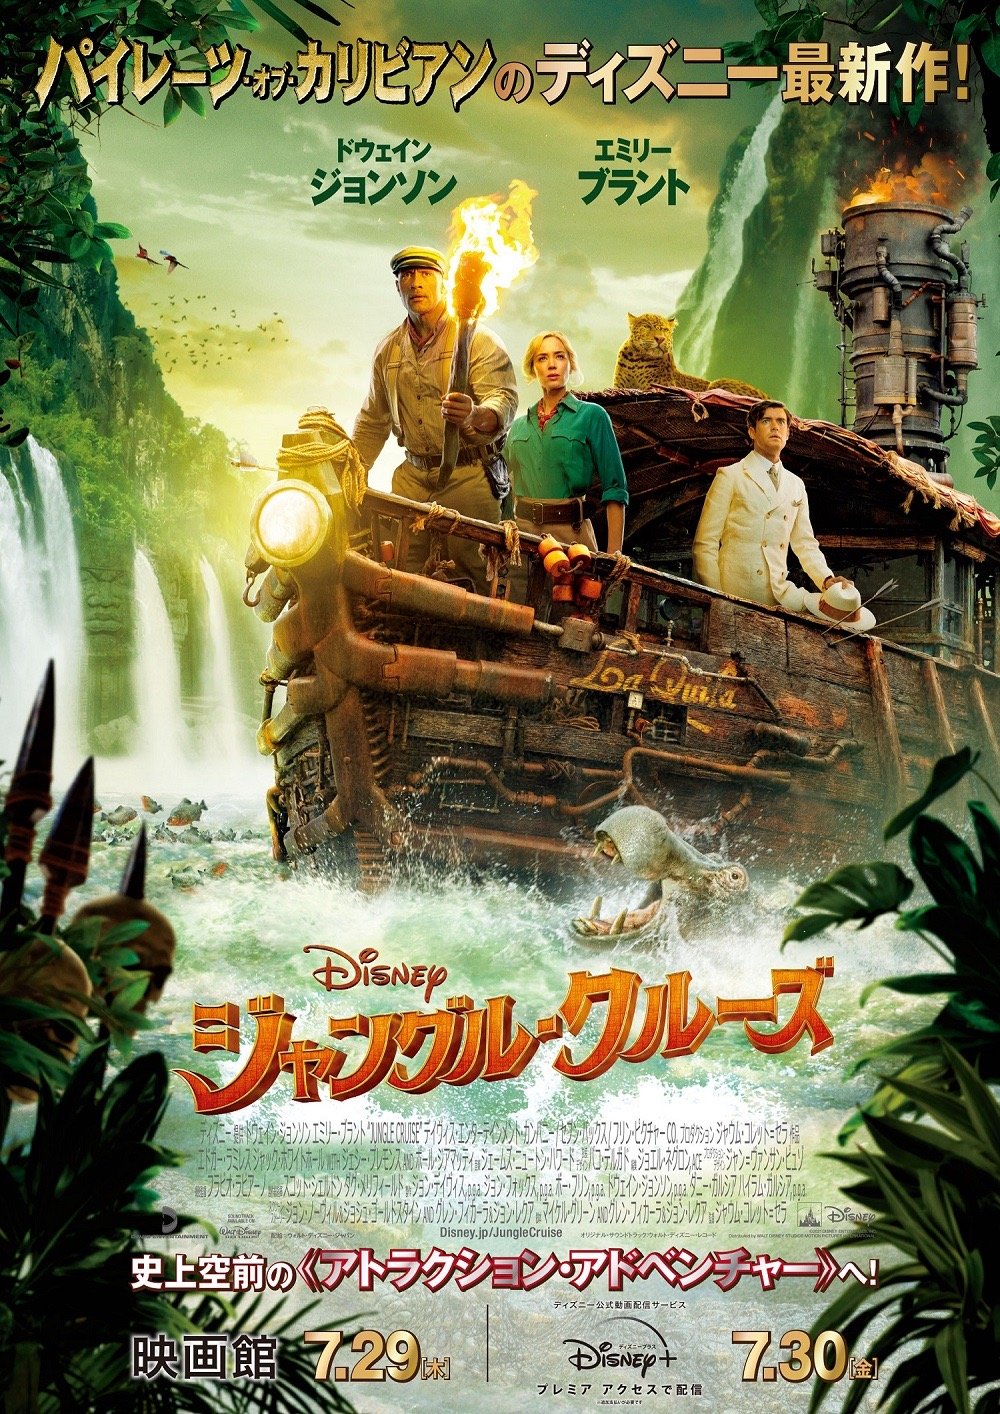 ディズニー映画『ジャングル・クルーズ』本ポスター